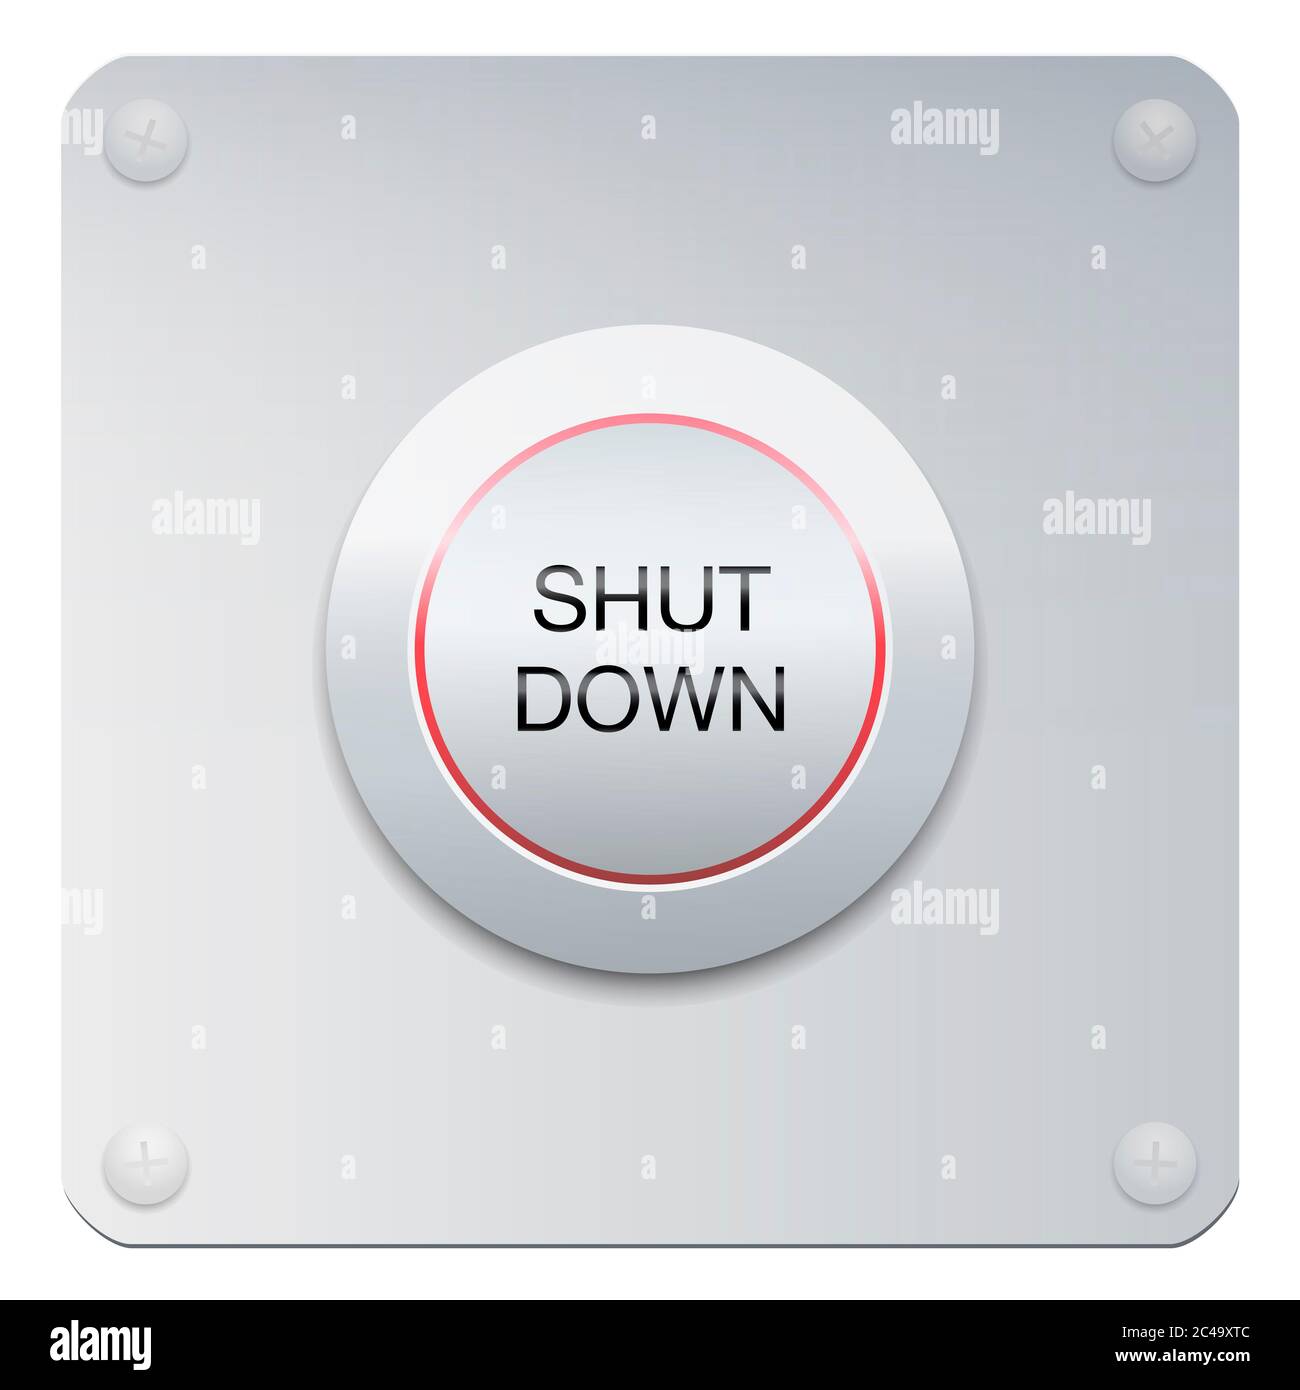 Shut down-Taste auf einem Chrom-Panel, um Maschinen oder Instrumente zu stoppen, sondern auch ein Unternehmen, die Gesellschaft, Menschen oder die ganze Welt. Stockfoto